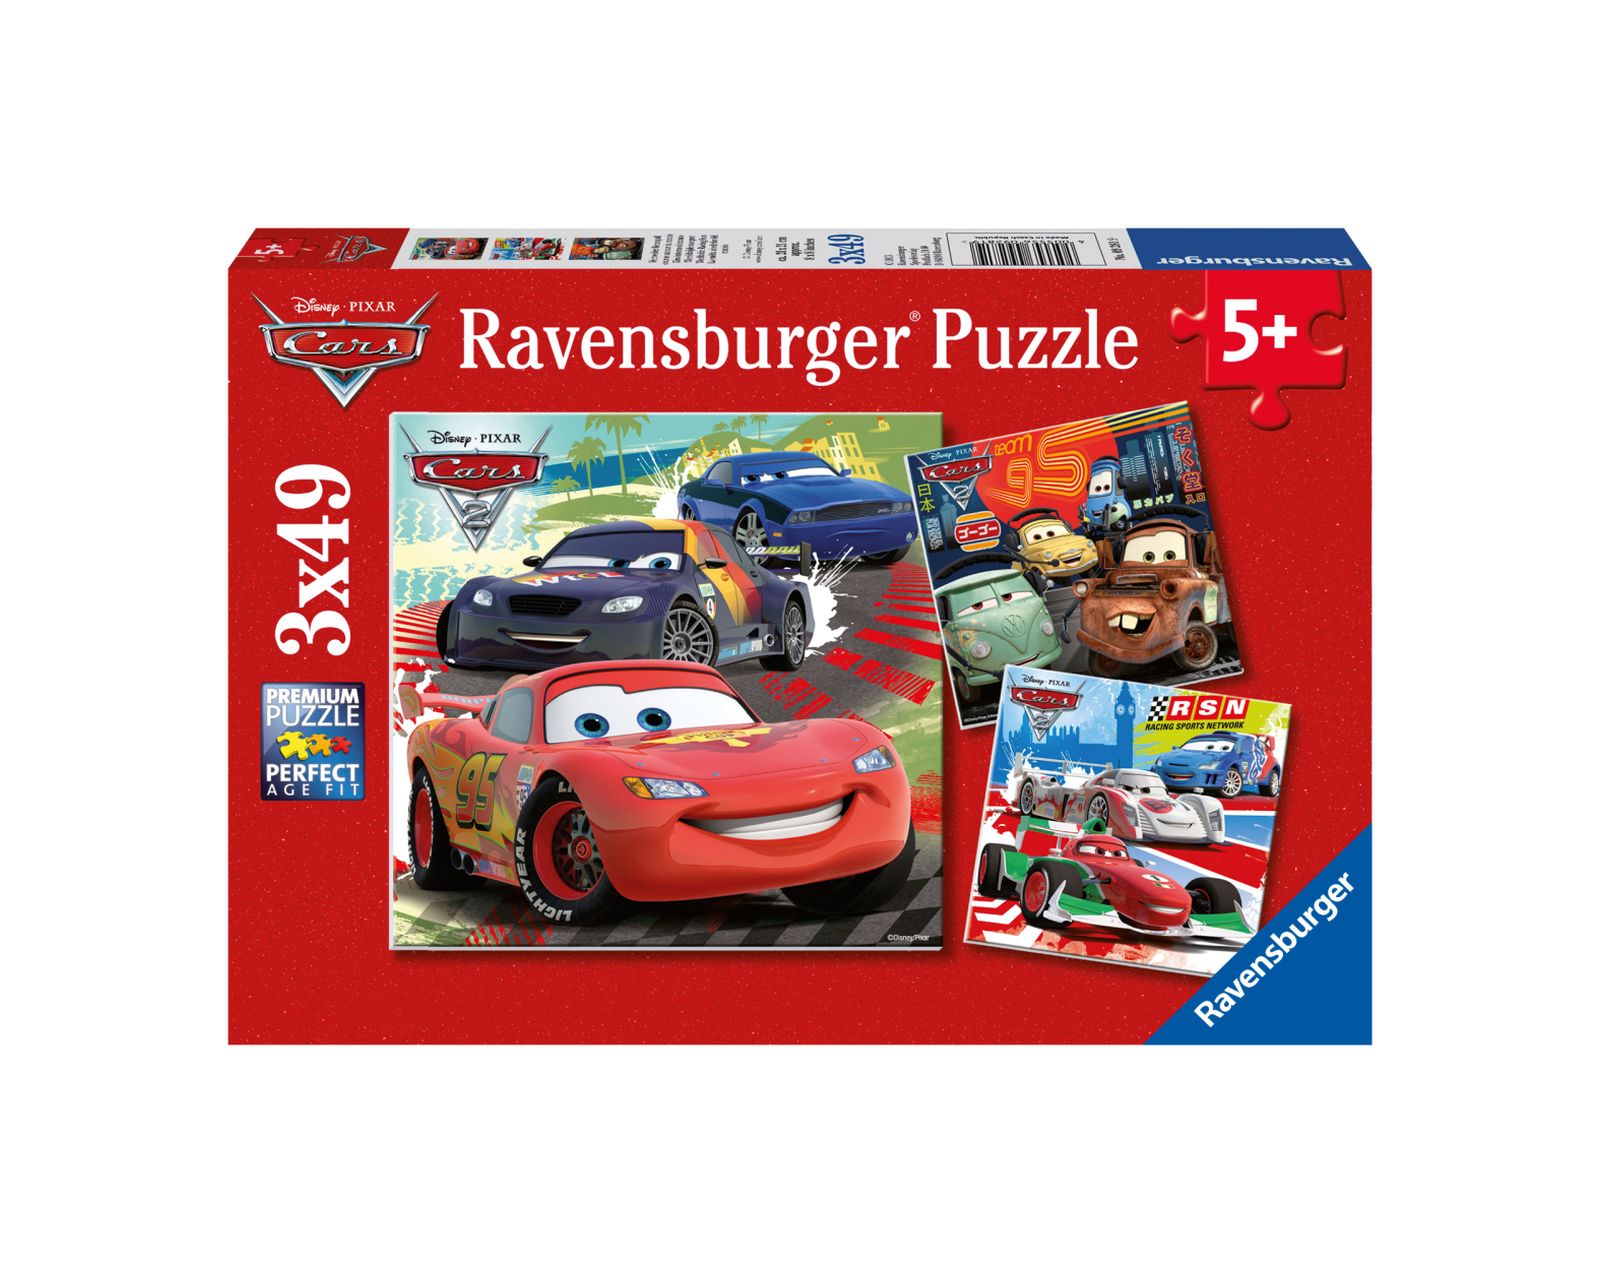 Ravensburger 3 puzzle 49 pezzi - cars 2 - RAVENSBURGER, Cars